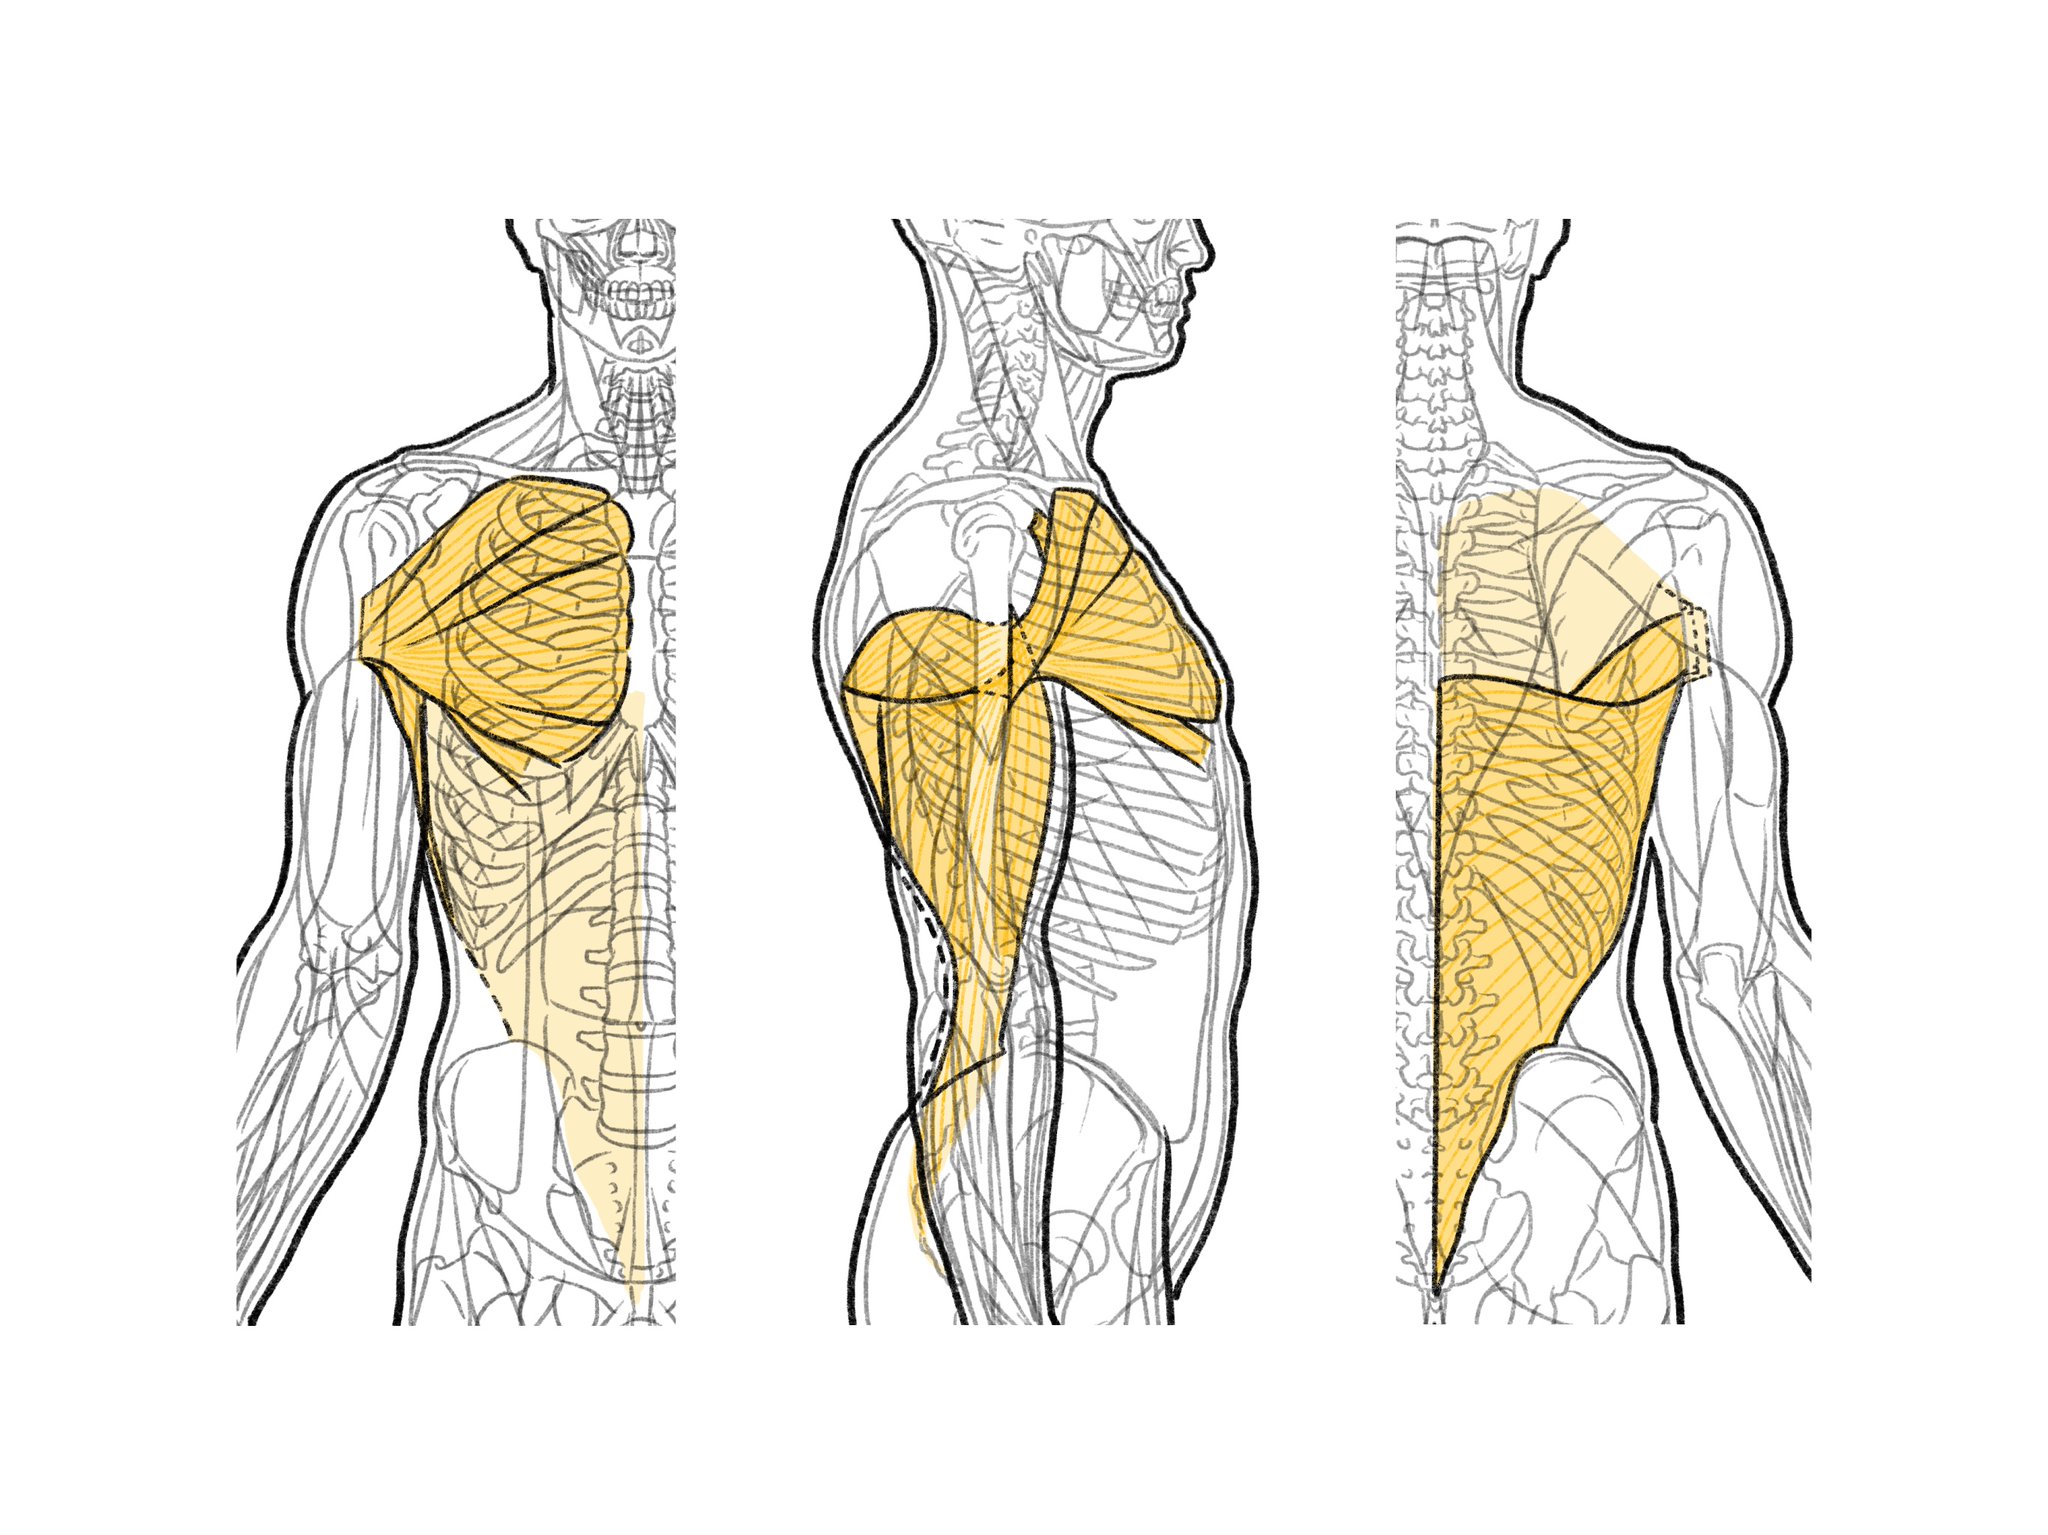 伊豆の美術解剖学者 腋窩の下縁を作る筋群 前方が大胸筋と小胸筋 後方が広背筋と大円筋 これらの筋 の腱は上腕骨の結節間溝の底で近接する 大胸筋と小胸筋は胸板を作り 広背筋と大円筋は腋窩あたりで逆三角形の輪郭を作る